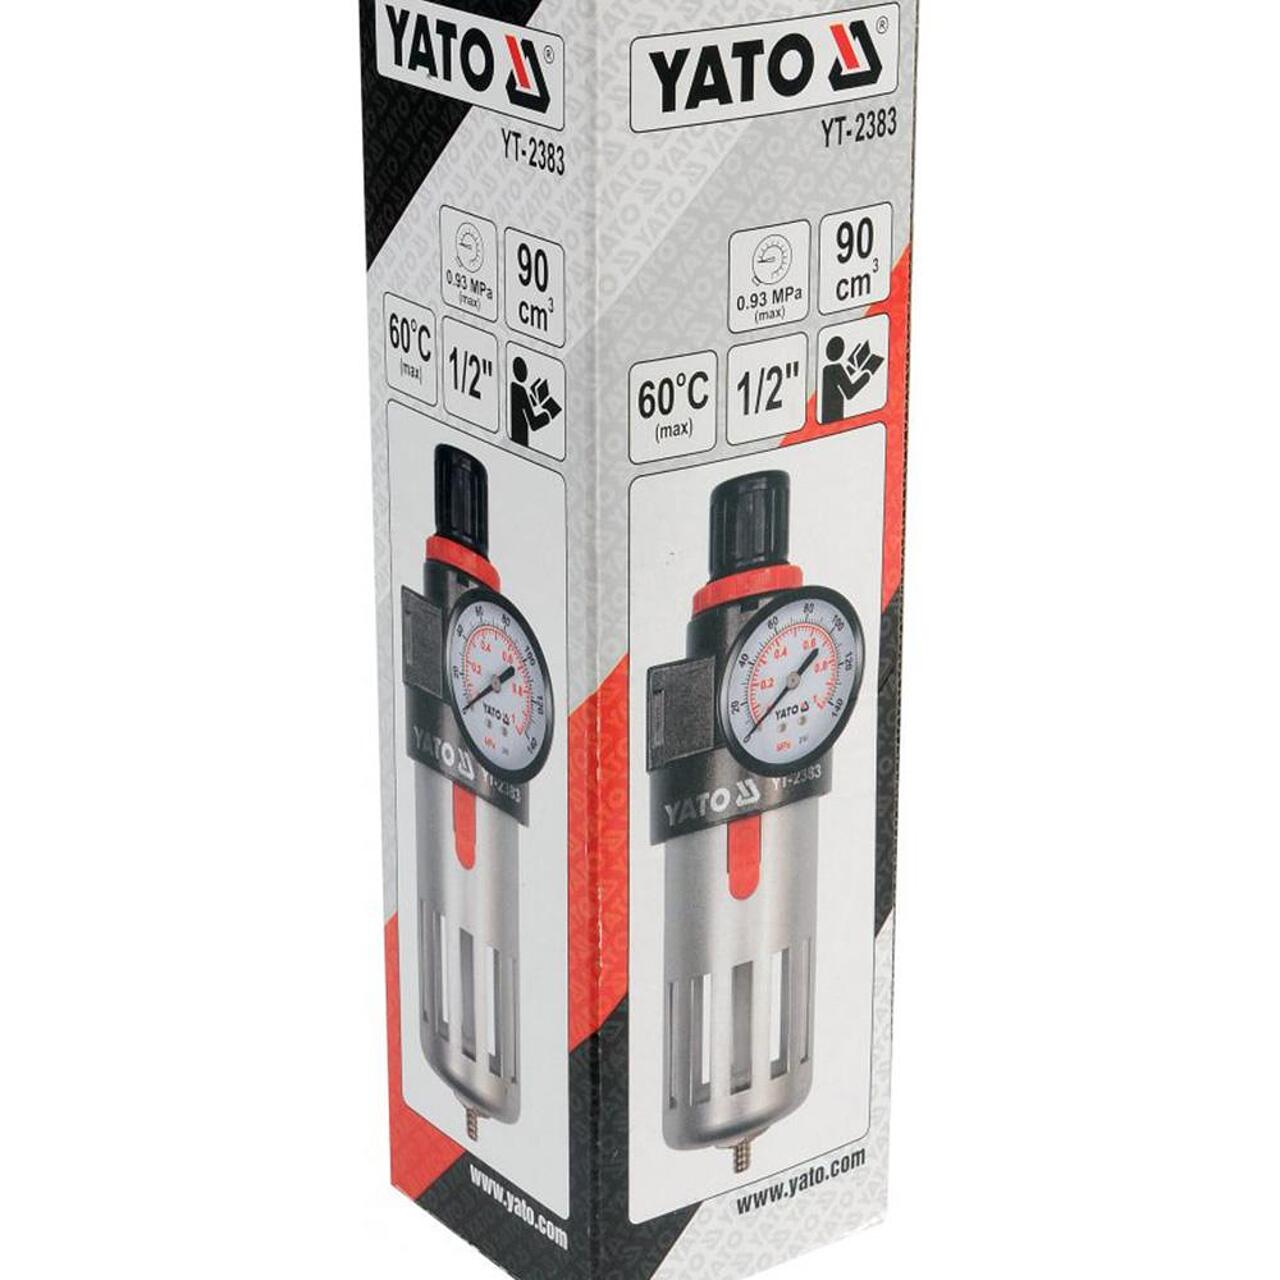 Пневматичен регулатор и филтър, манометър YATO YT 2383, 1/2", 9.3 Bar, 90 см³